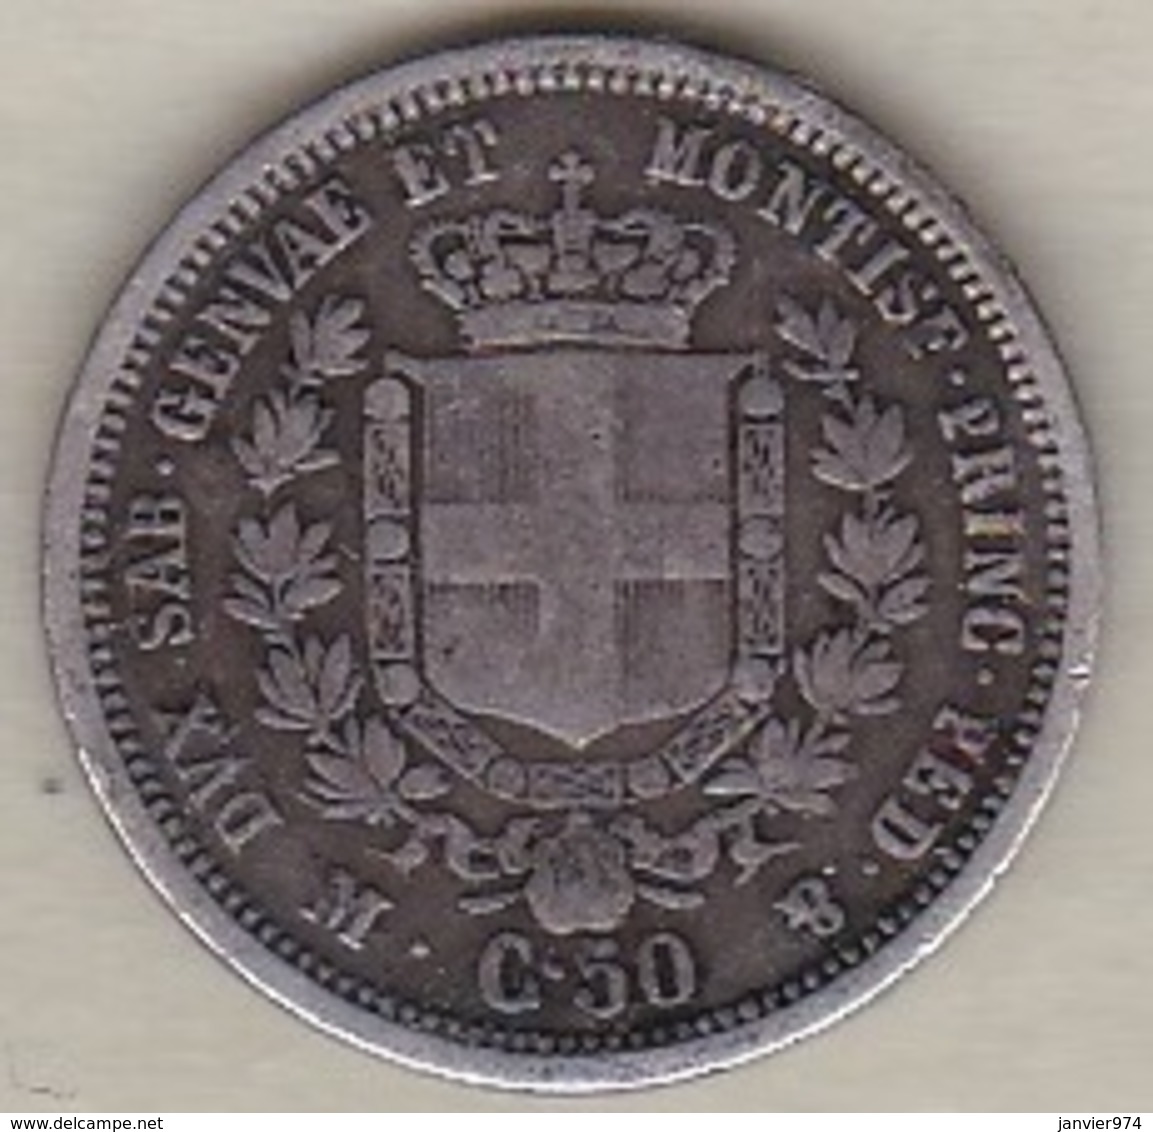 REGNO DI SARDEGNA . 50 CENTESIMI 1860 M (MILANO). VITTORIO EMANUELE II. ARGENT - Piémont-Sardaigne-Savoie Italienne